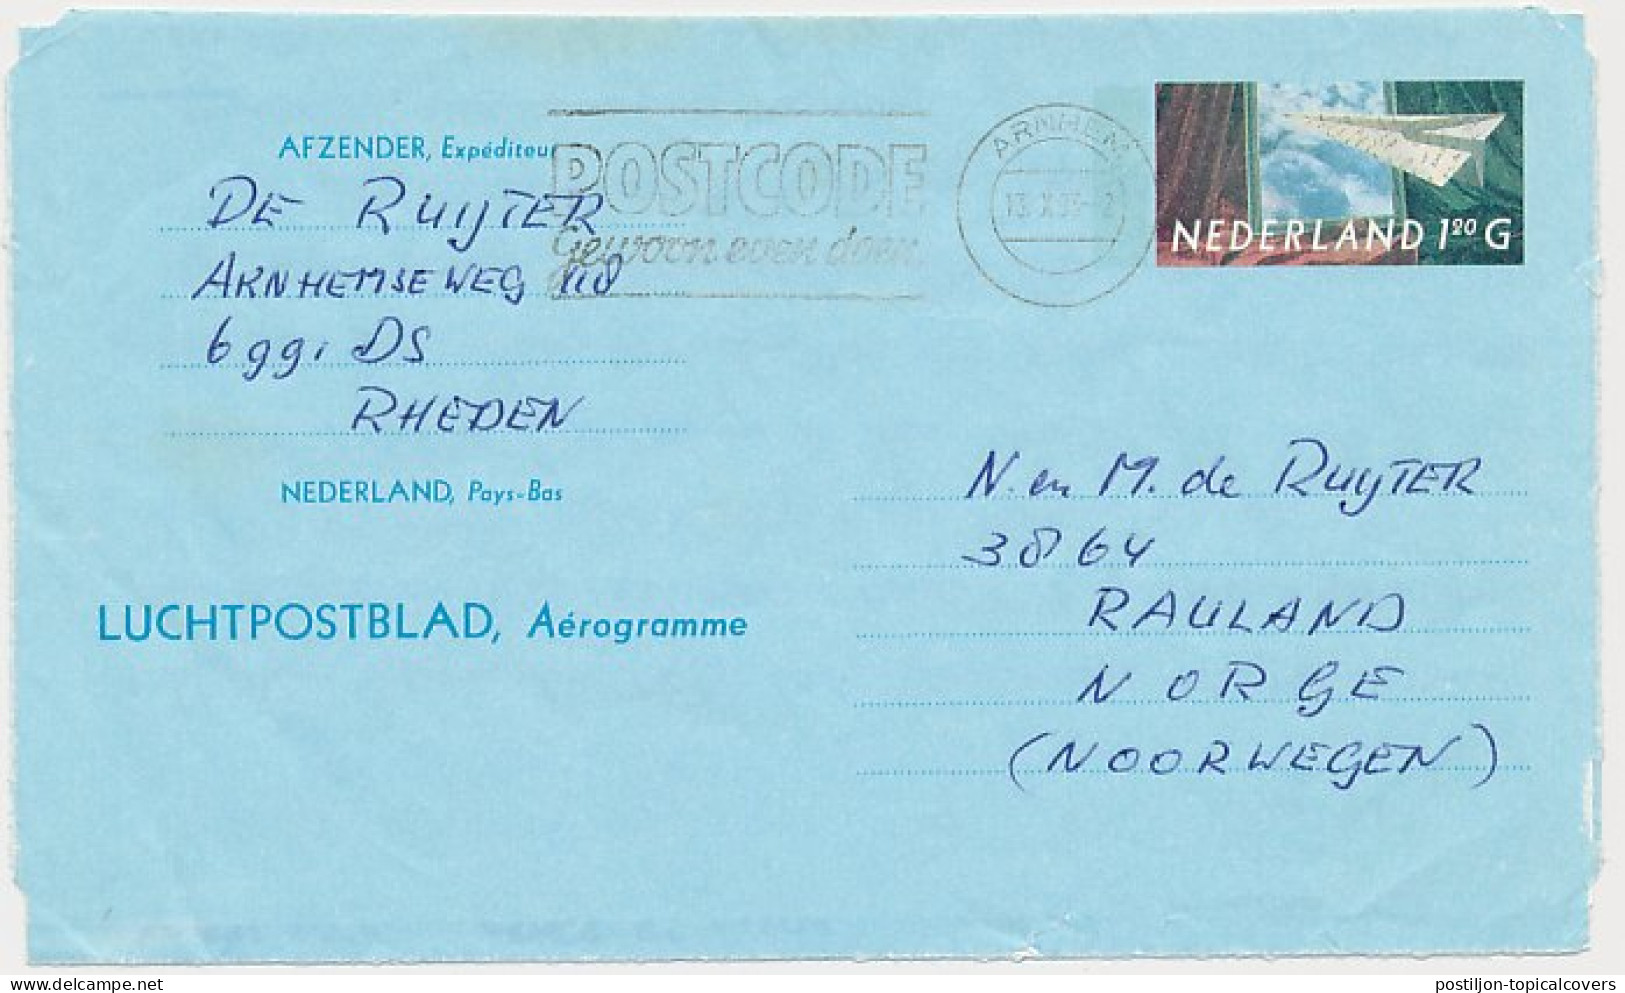 Luchtpostblad G. 32 Arnhem - Rauland Noorwegen 1993 - Postal Stationery